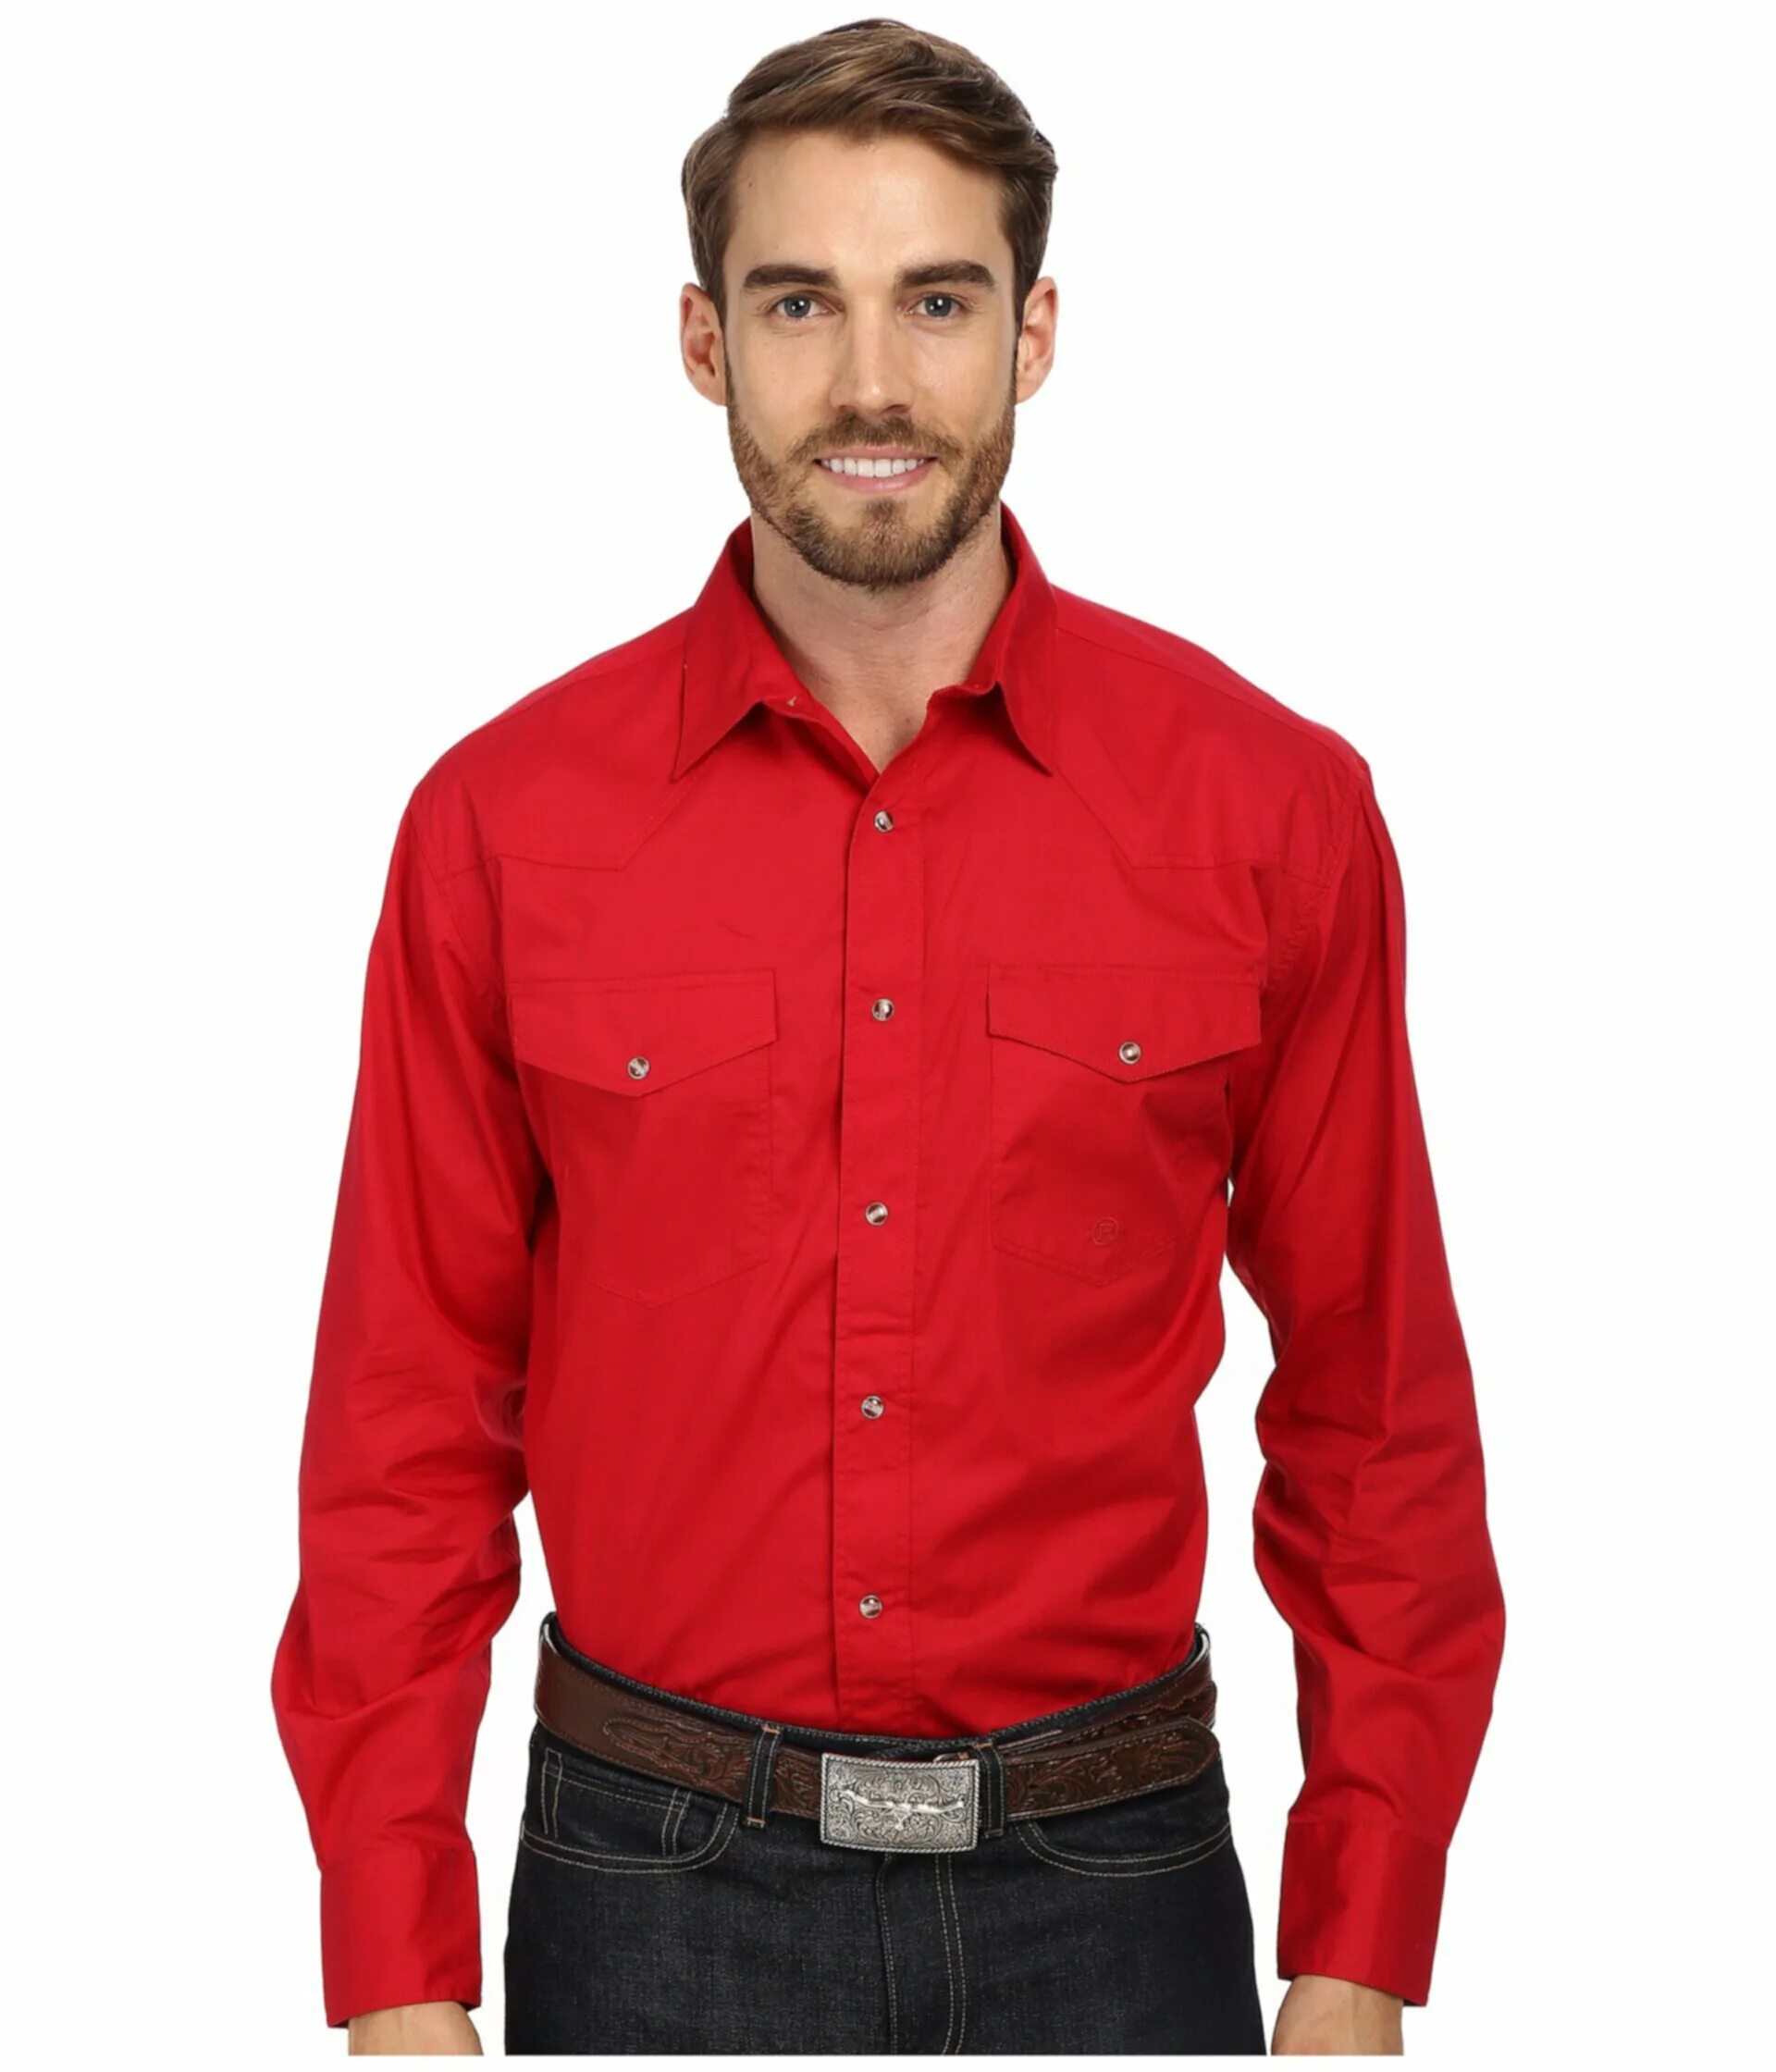 Красная рубашка текст. Рубашка мужская MCR красная. Рубашка мужская MCR 2020. Классные рубашки для мужчин. Парень в красной рубашке.